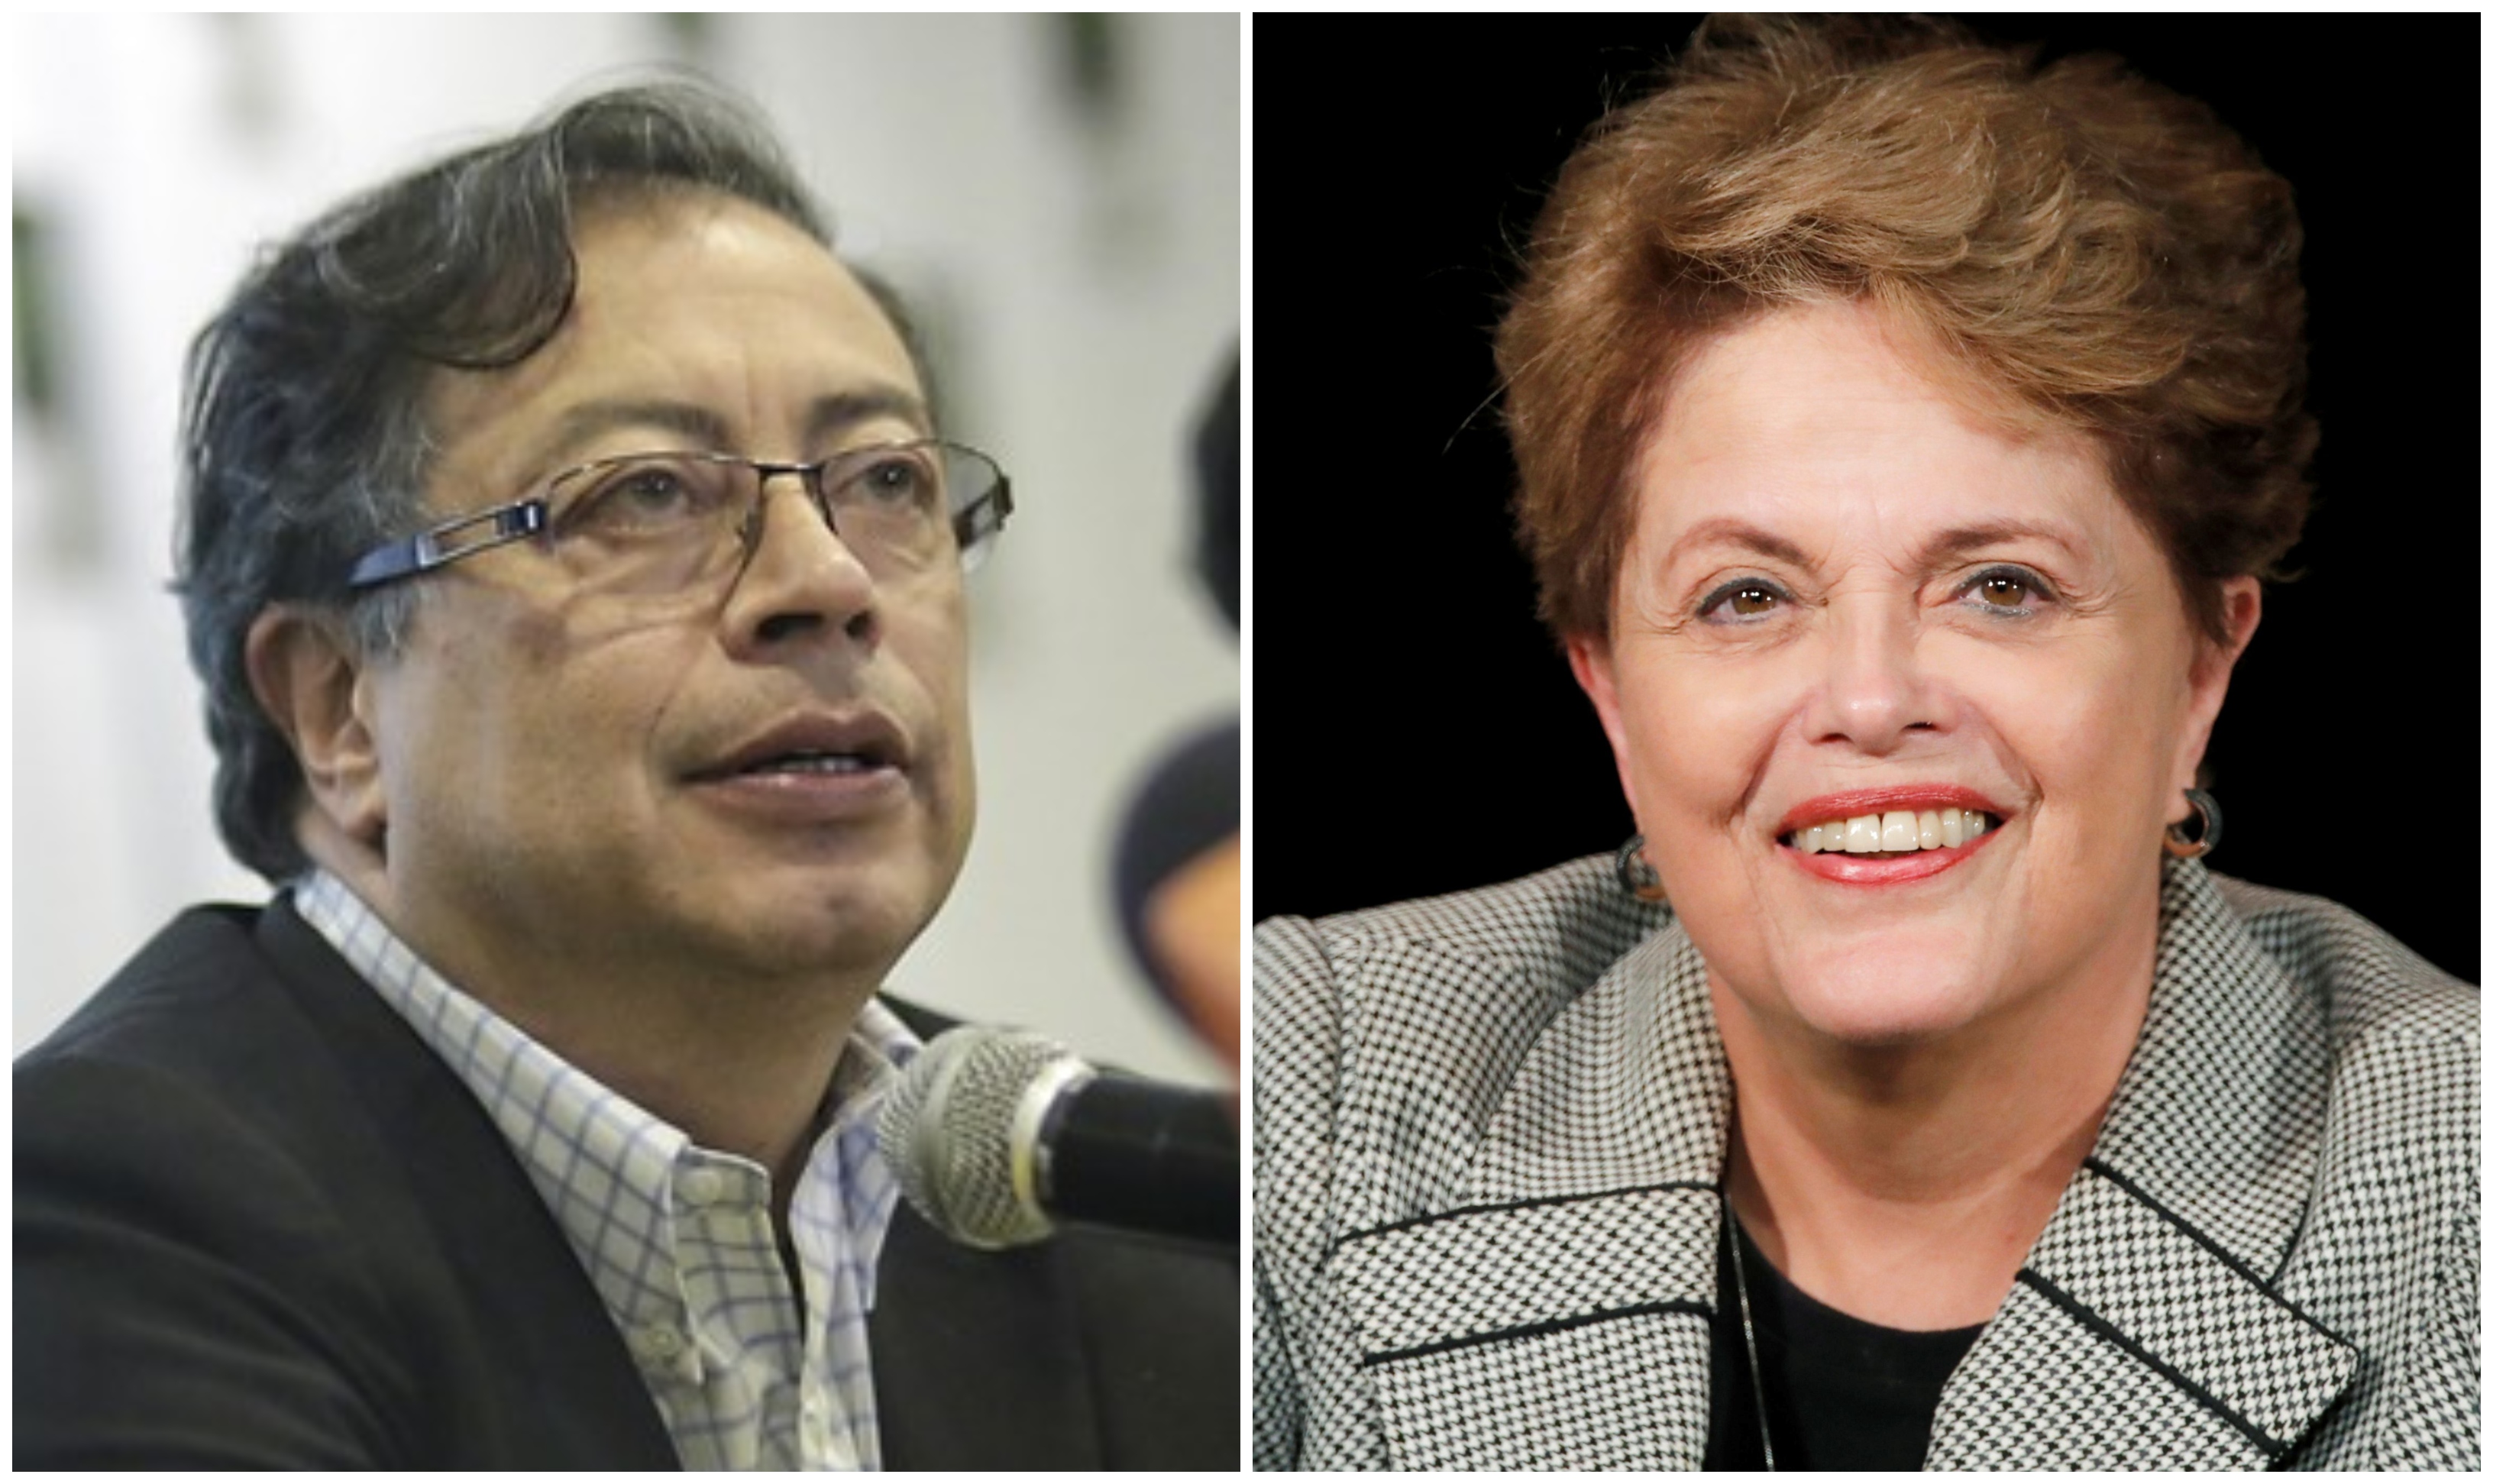 Gustavo Petro recibirá el apoyo de Dilma Rousseff y Lula da Silva para su campaña presidencial